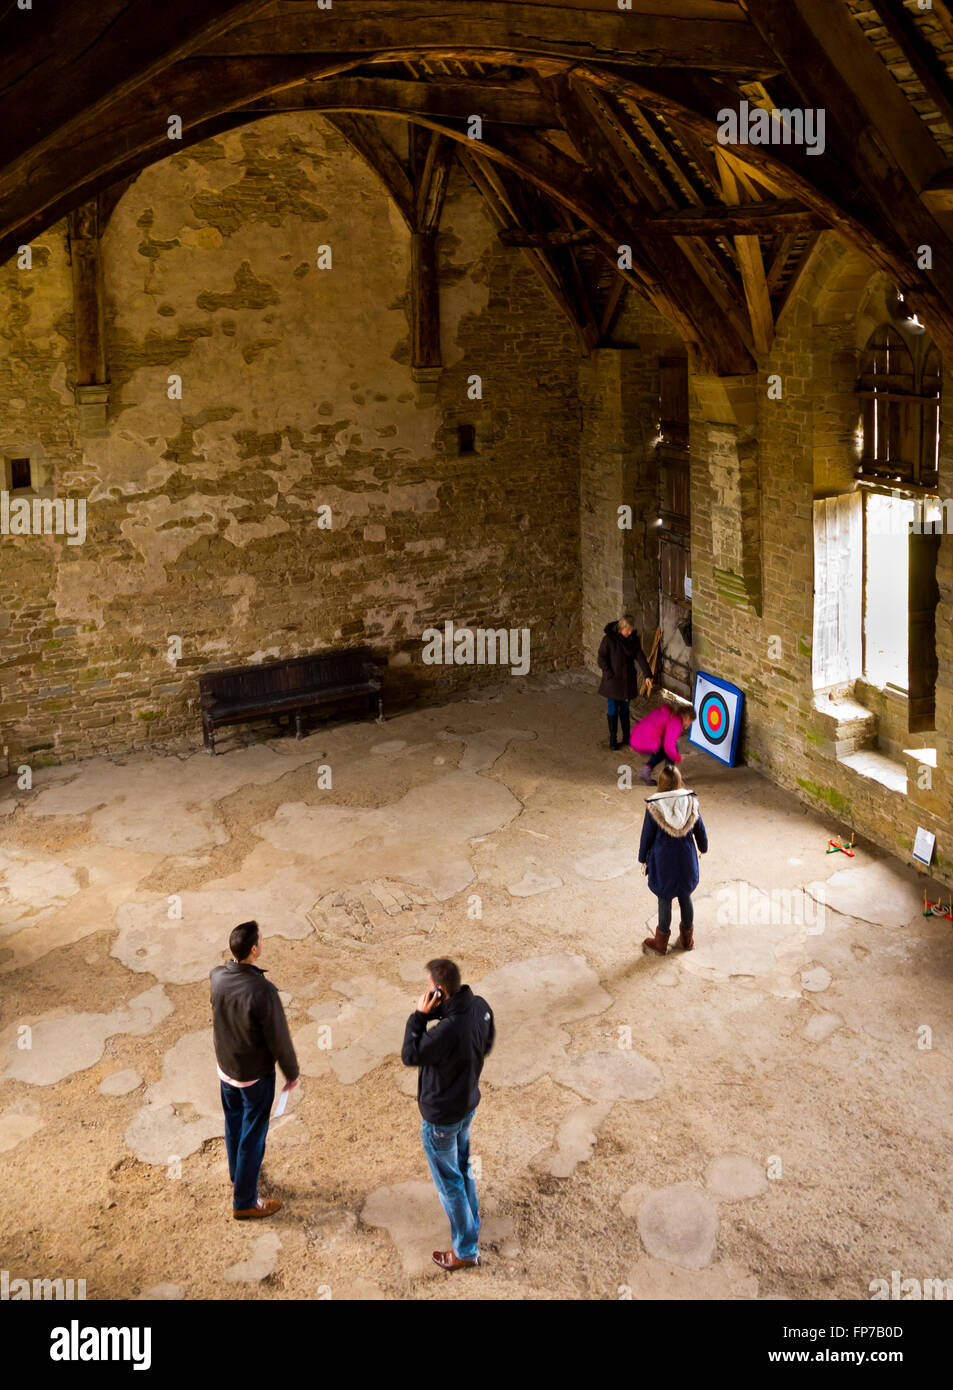 Les visiteurs à l'intérieur de la salle médiévale au château de Stokesay près de Ludlow dans le Shropshire England UK Banque D'Images